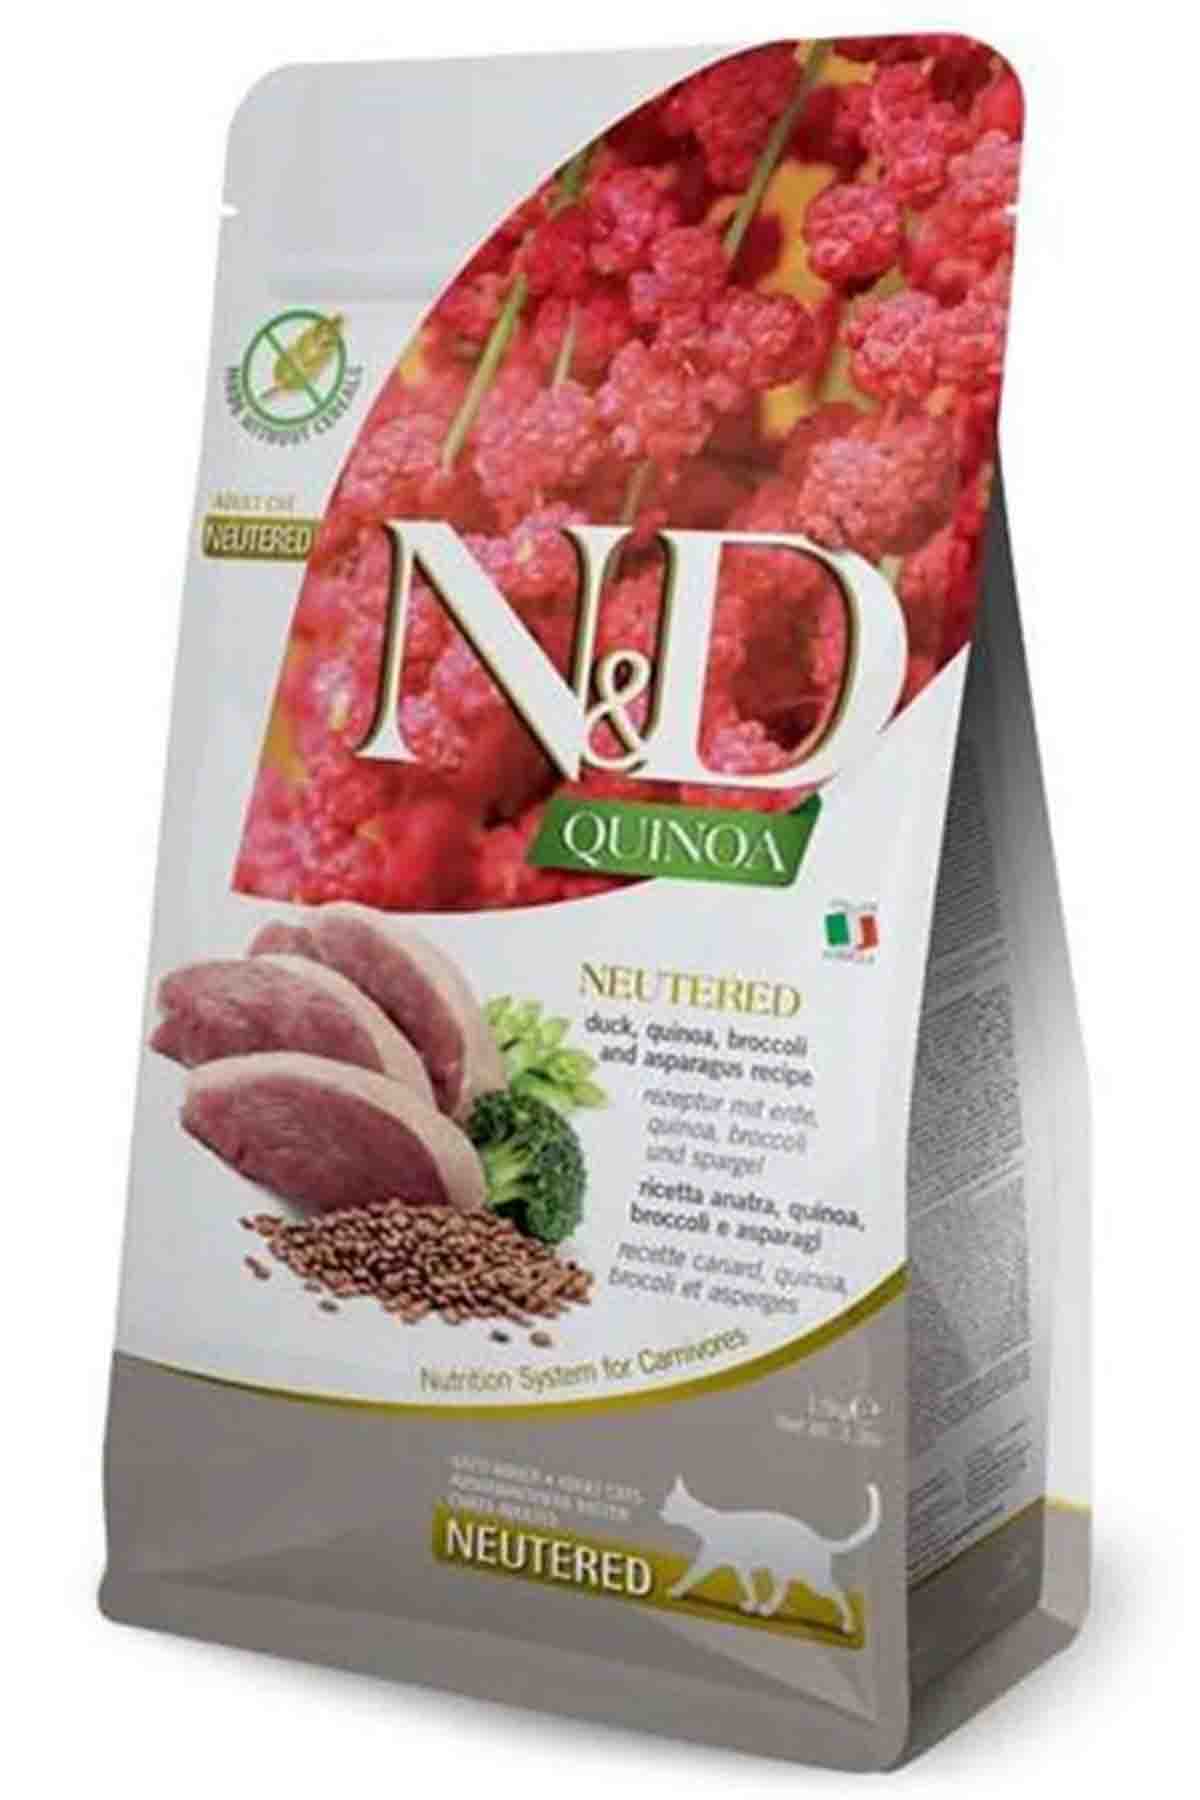 ND Quinoa Ördek Etli Kinoalı Brokolili Kısırlaştırılmış Kedi Maması 1,5kg